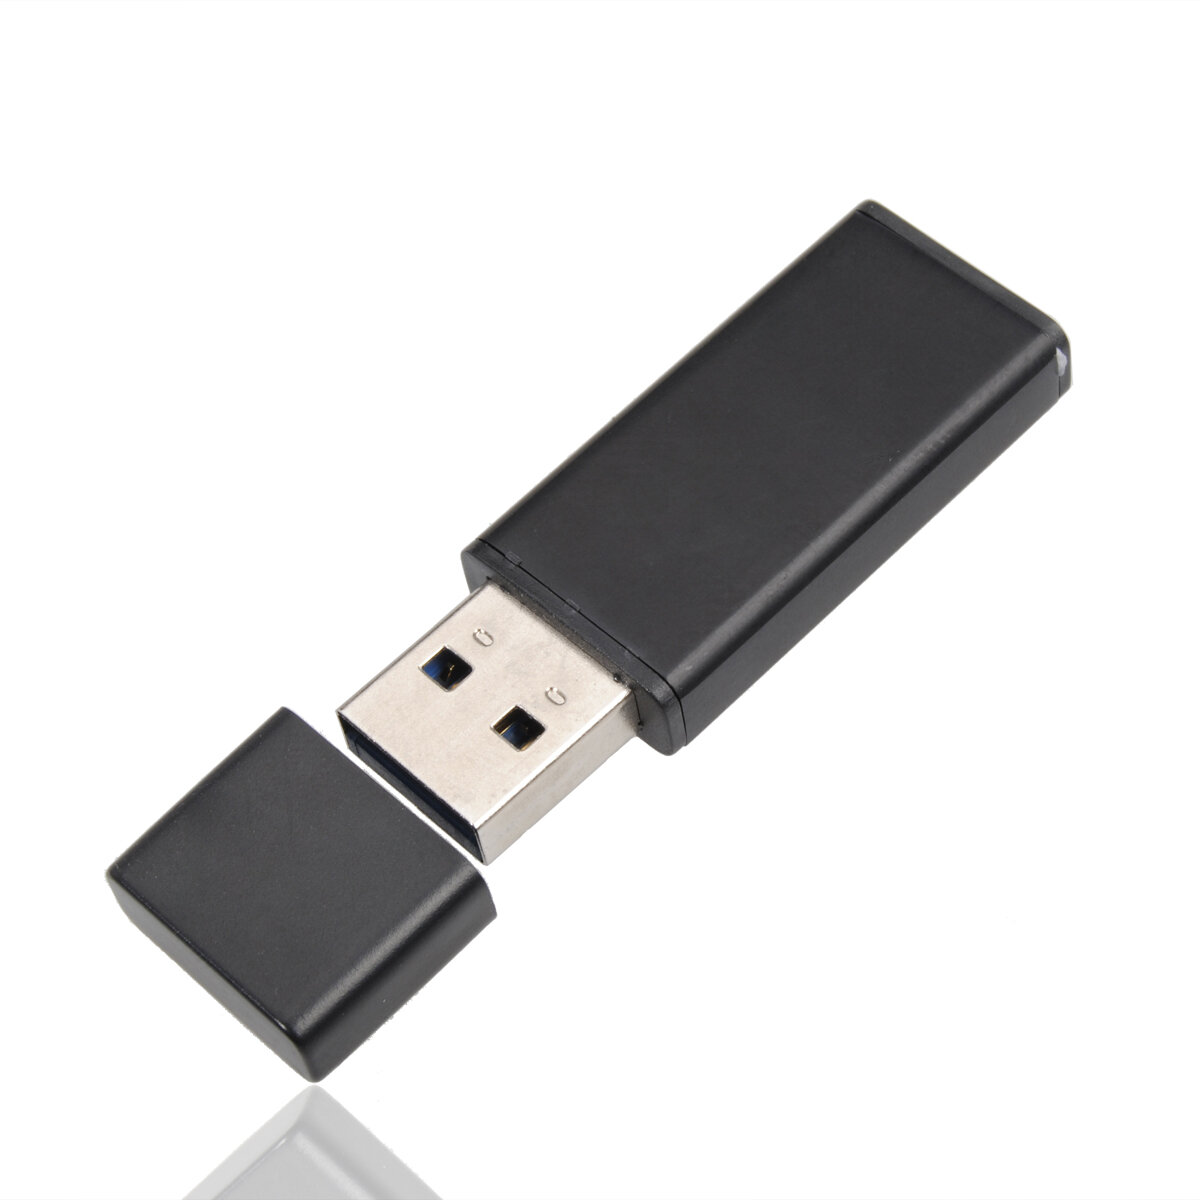 64G USB 3.0 Flash Drive Mini USB Disk Portable Thumb Drive Memory Stick for Computer Laptop